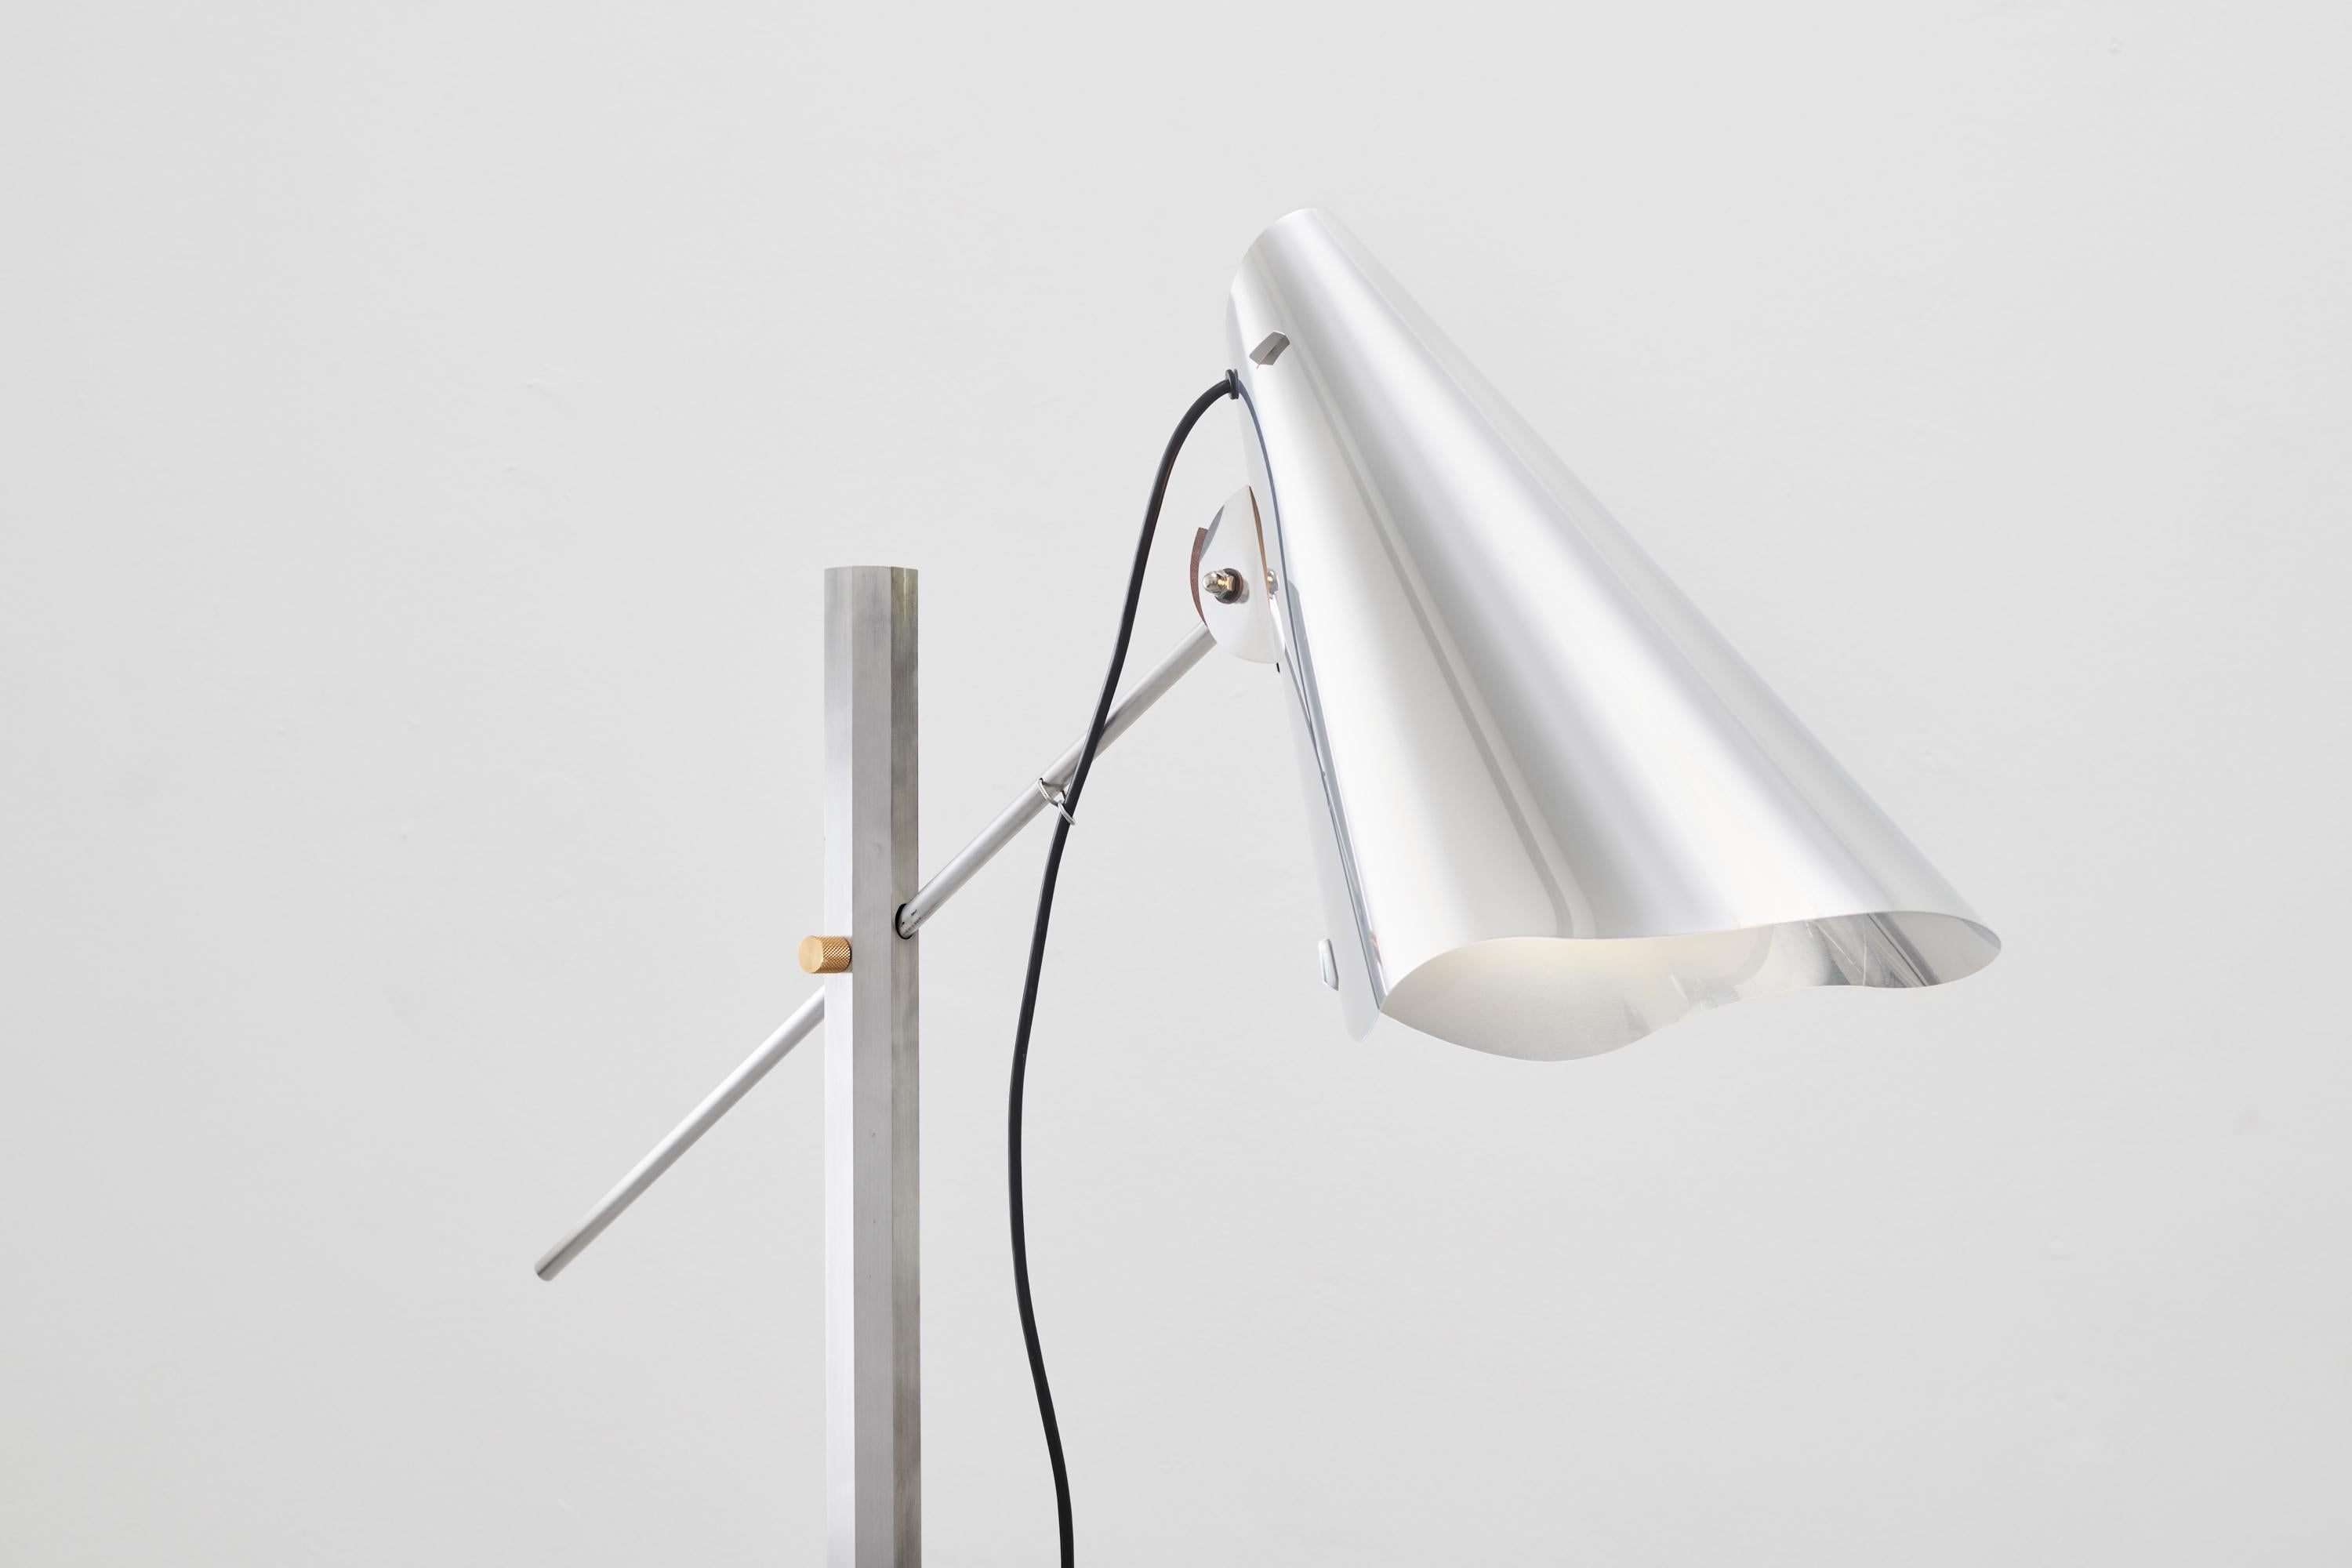 Eine neue Version der ursprünglichen und größeren Straßenlampe des dänischen Künstlers FOS.
Aluminiumstab und -schirm mit Messingdetails und Betonsockel. 
Auch in einer Holz- und Messingversion erhältlich.
Maßgeschneiderte Größen verfügbar
